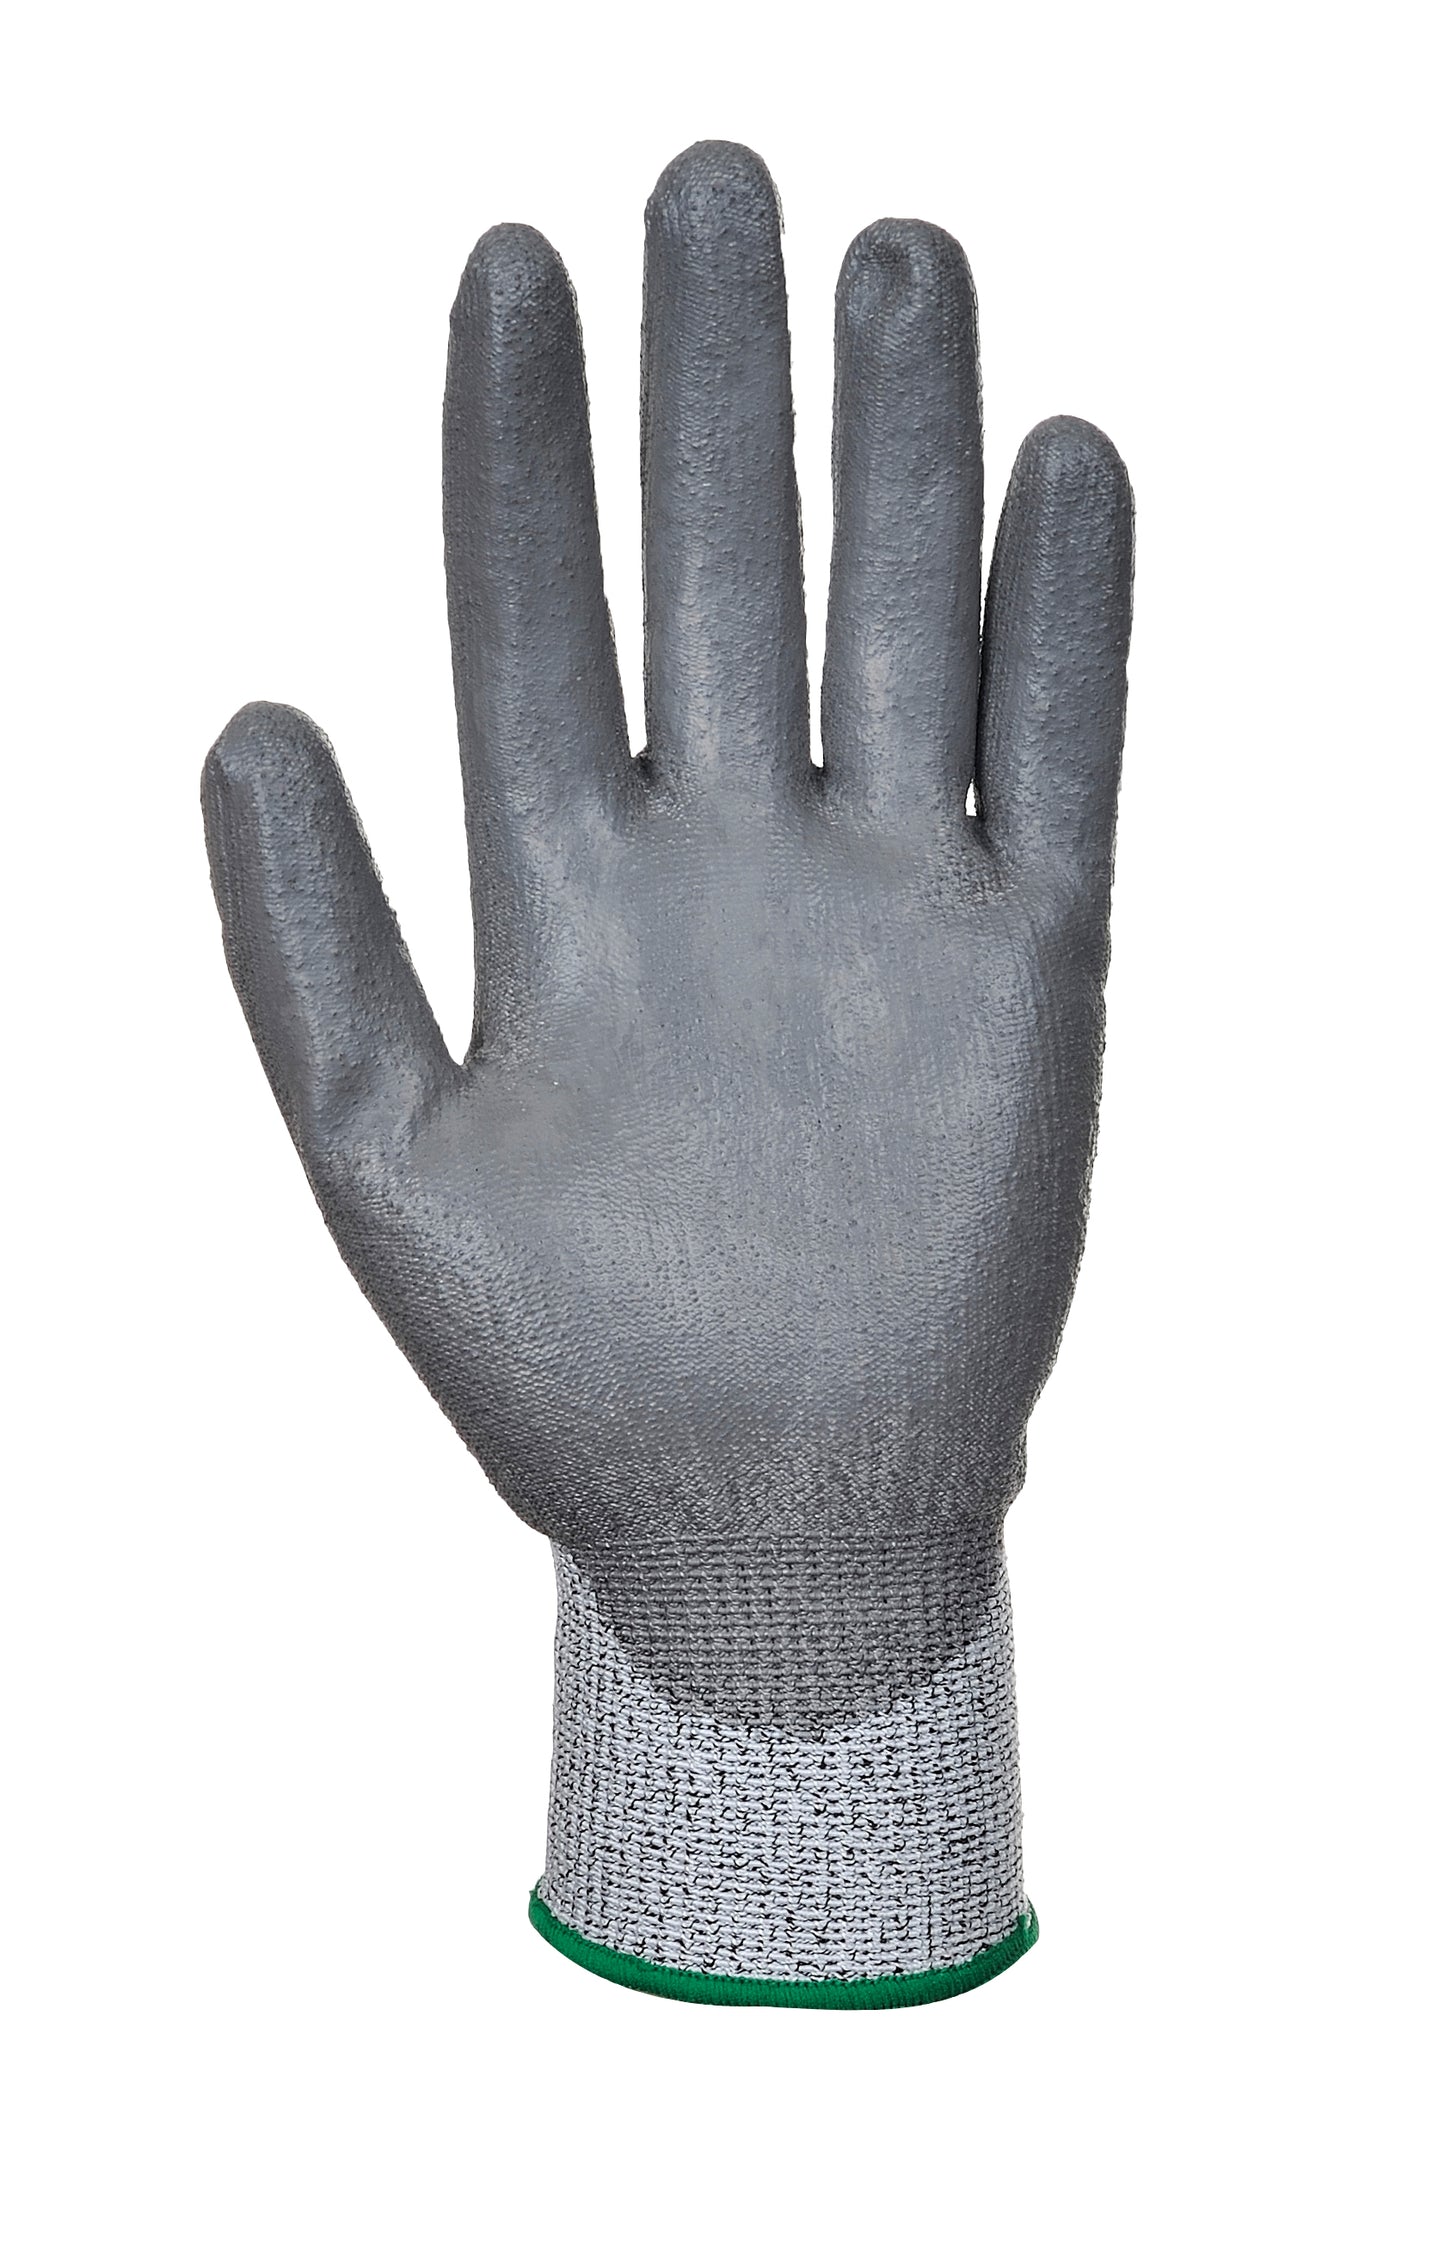 LR Cut PU Palm Glove Grey- A620 Palm